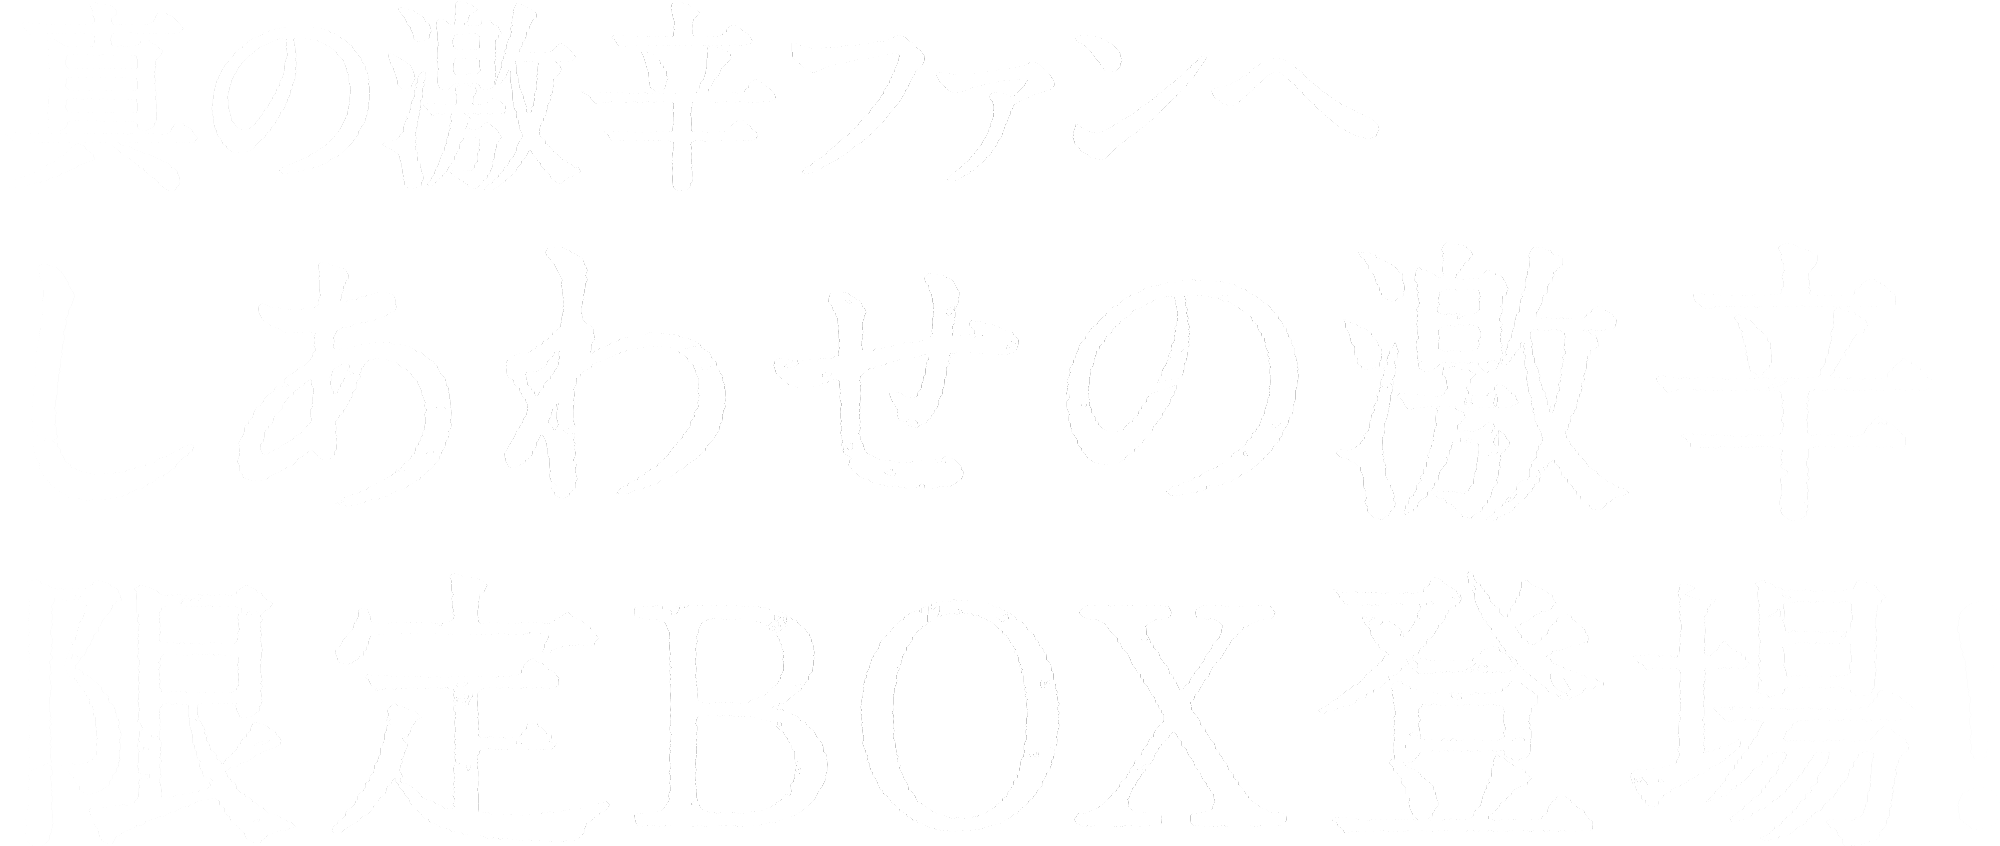 真の激辛ファンへ しあわせの激辛限定BOX登場！